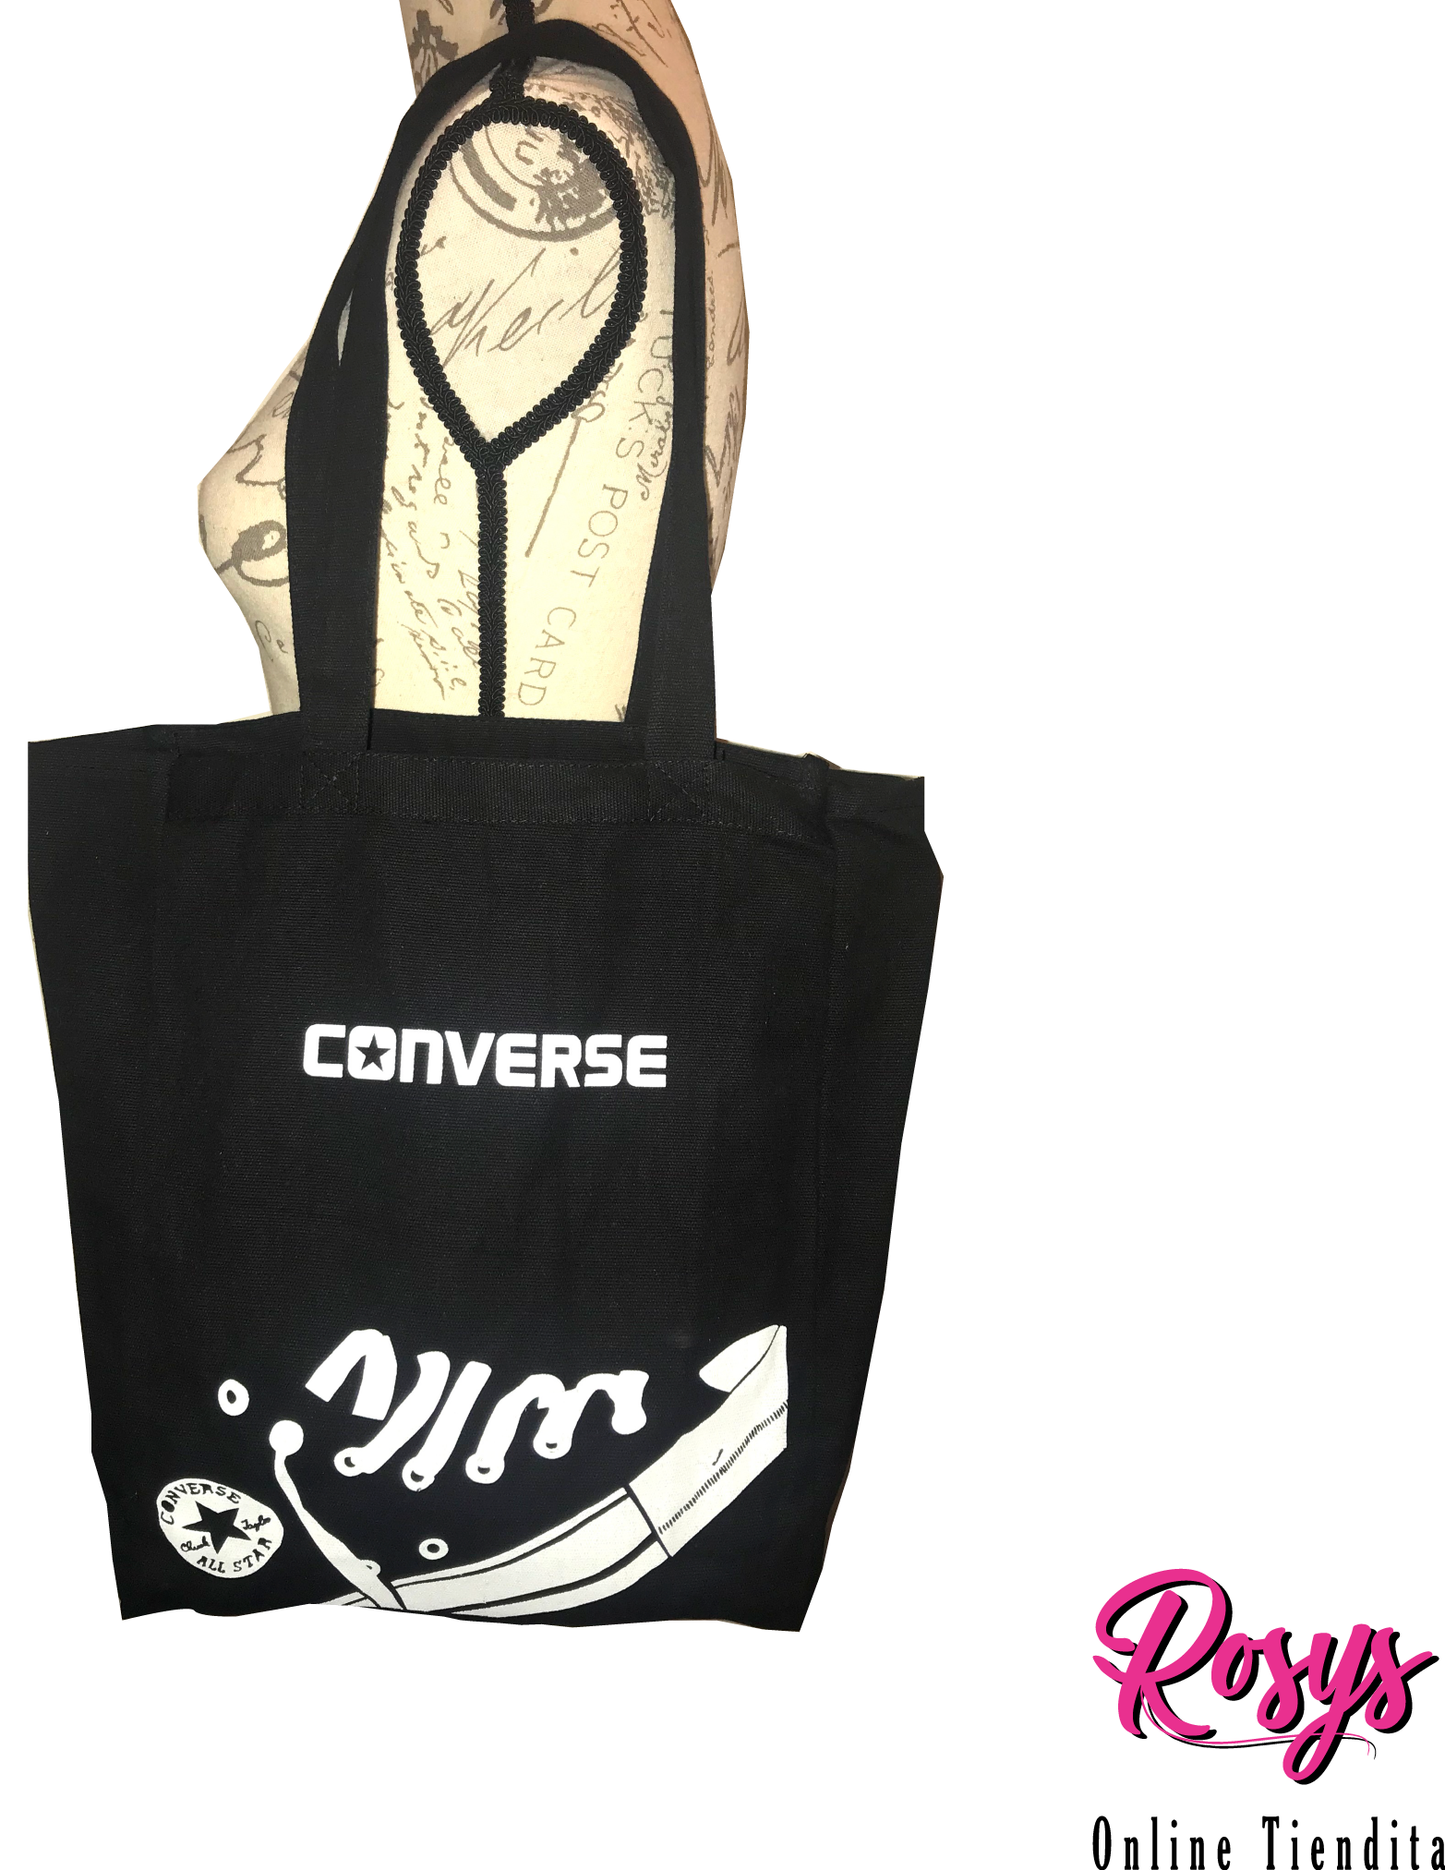 Converse Style Book Tote Bag | Small Black Tote